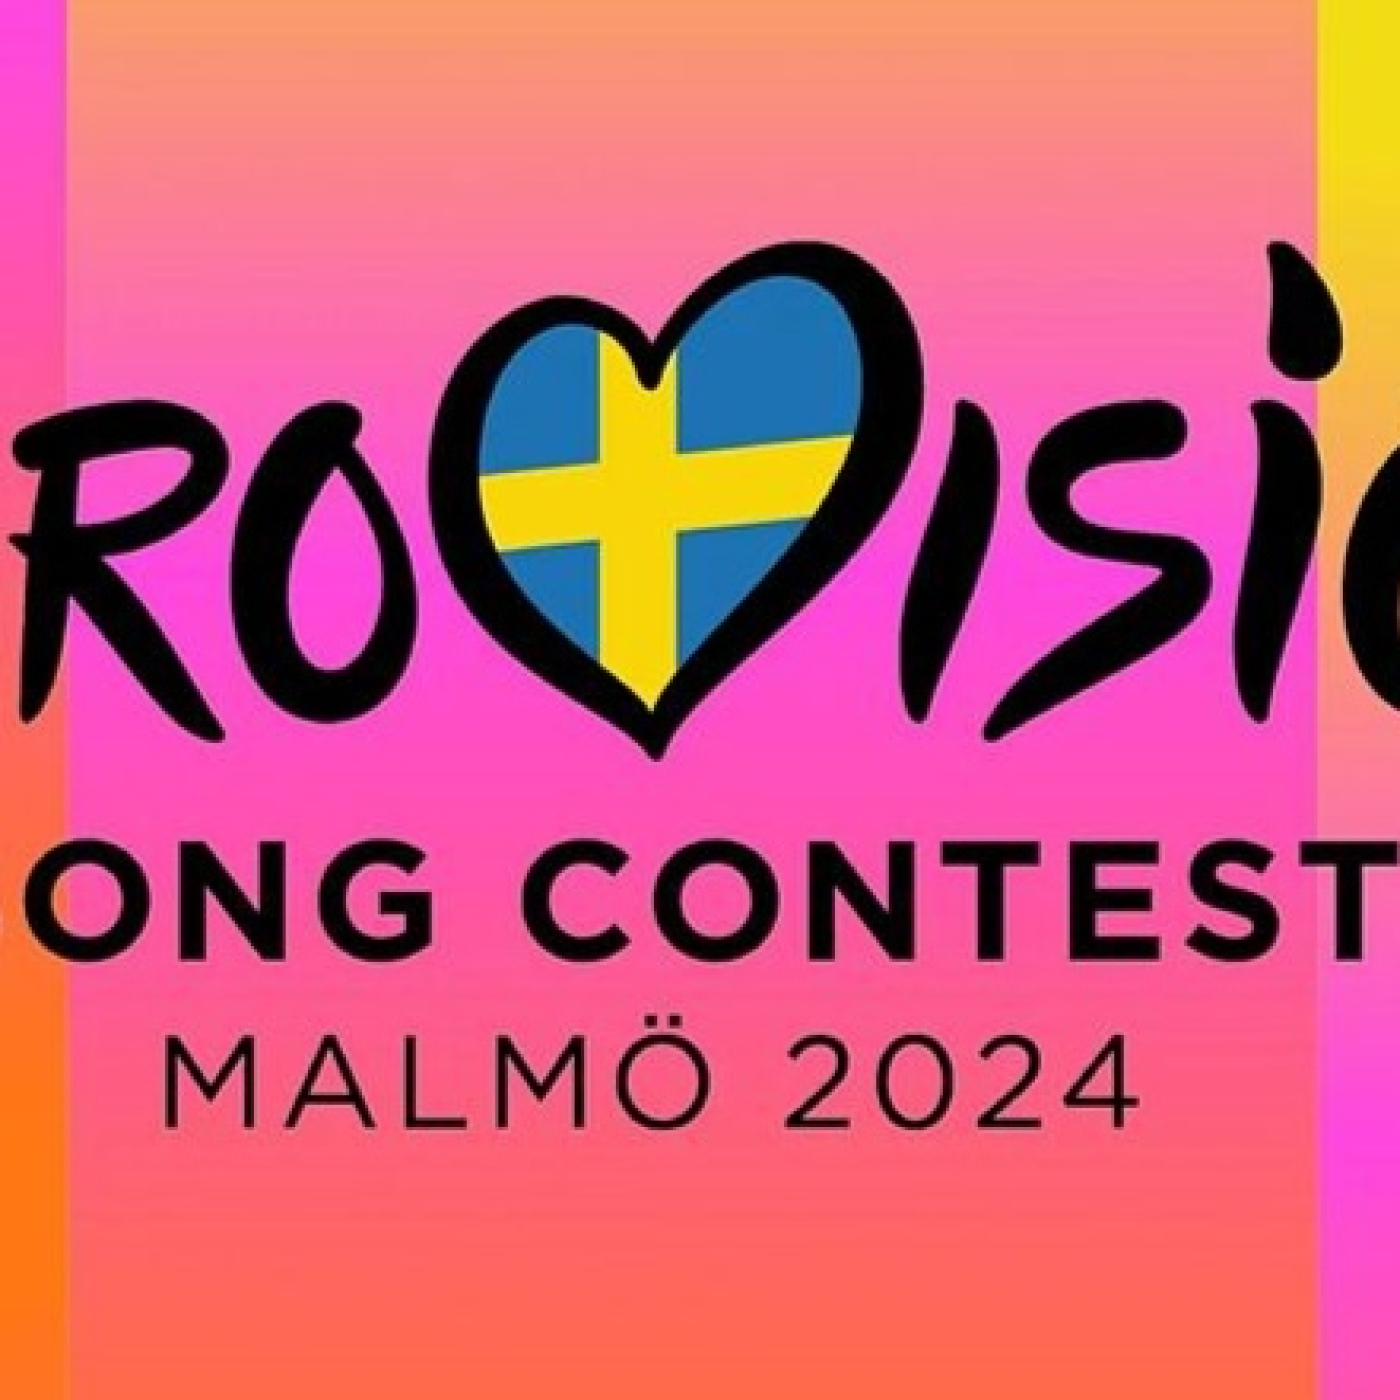 Política y Eurovisión, una relación histórica